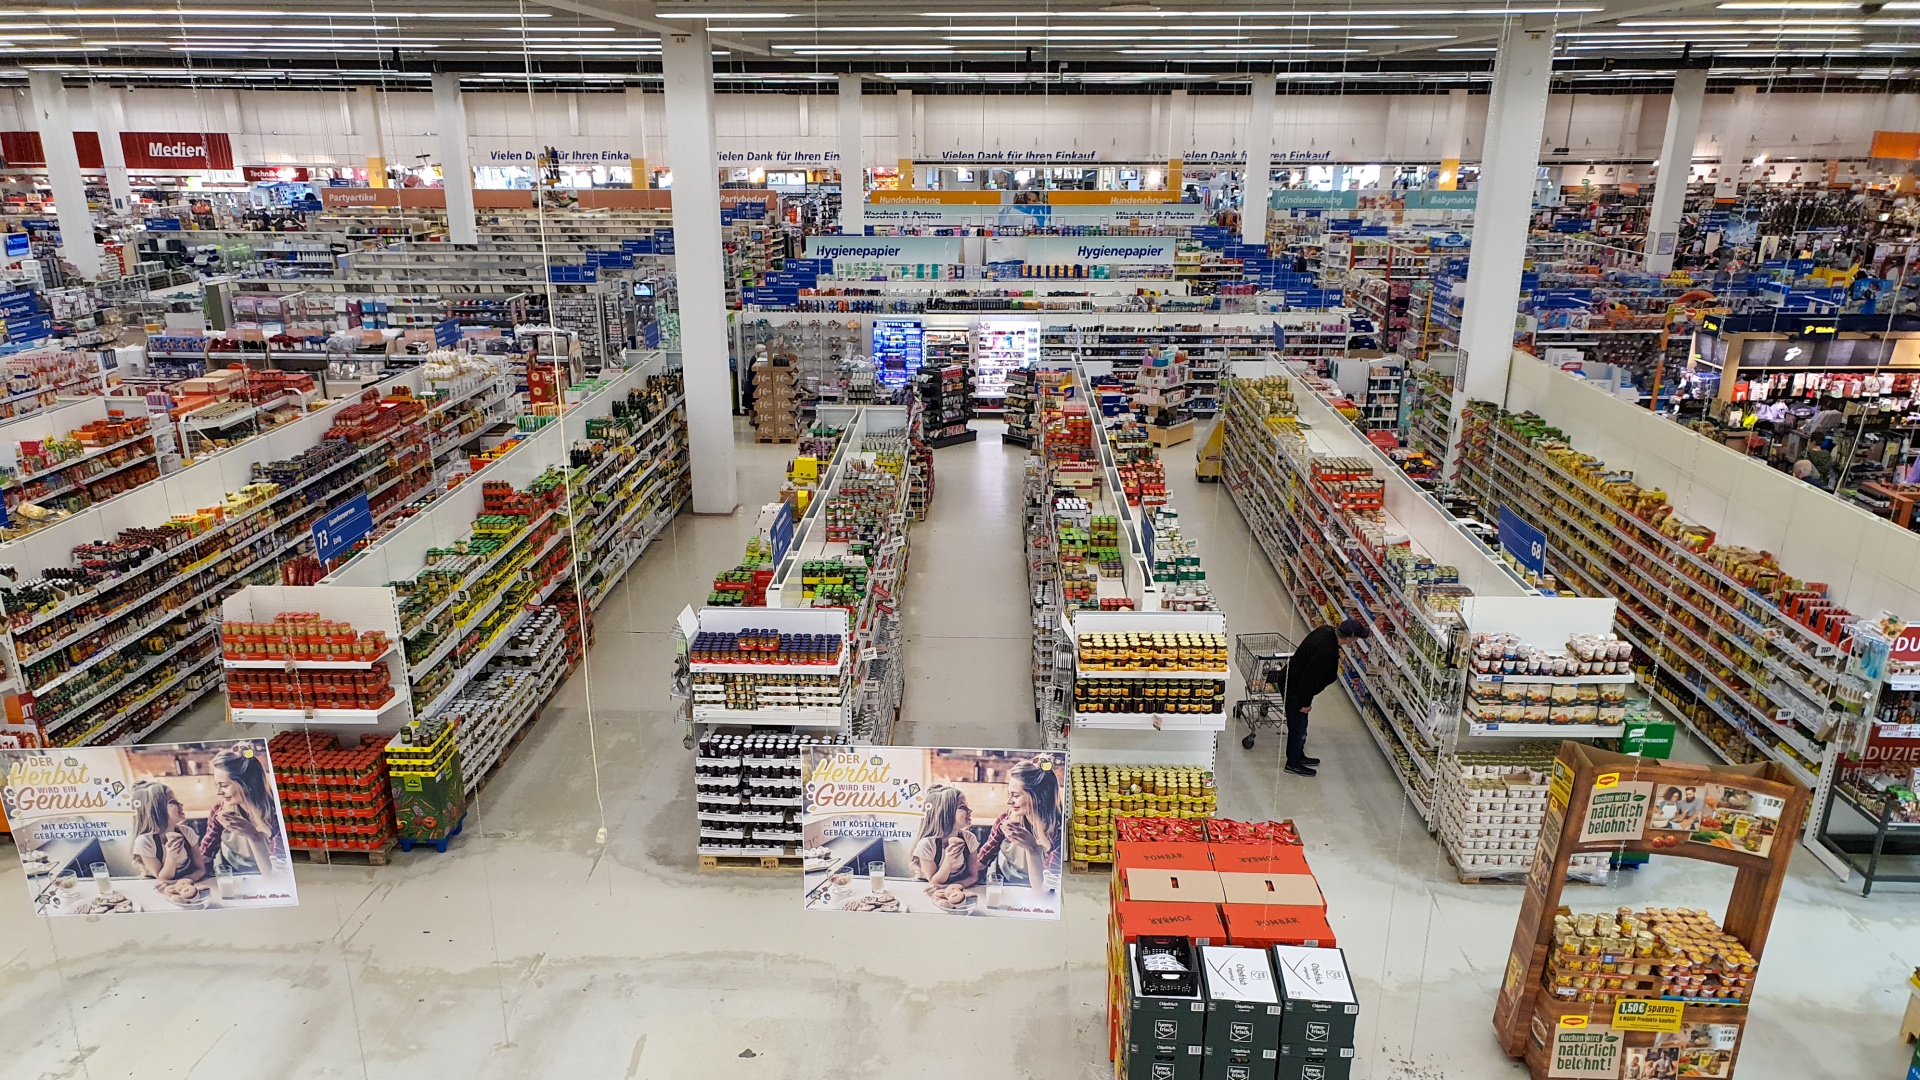 Supermarket Interior